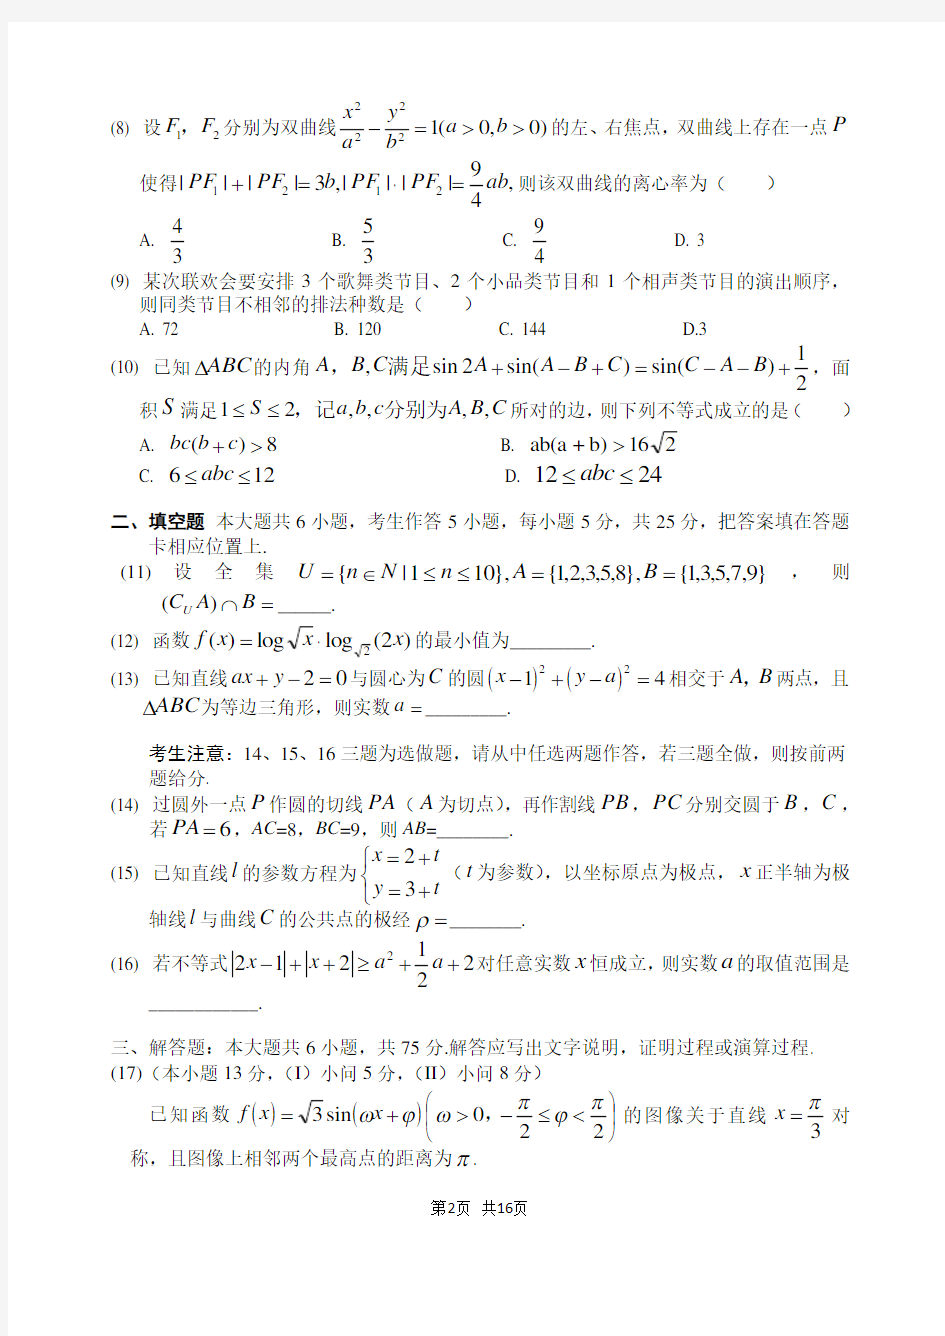 2014年高考重庆理科数学试题及答案(精校版)